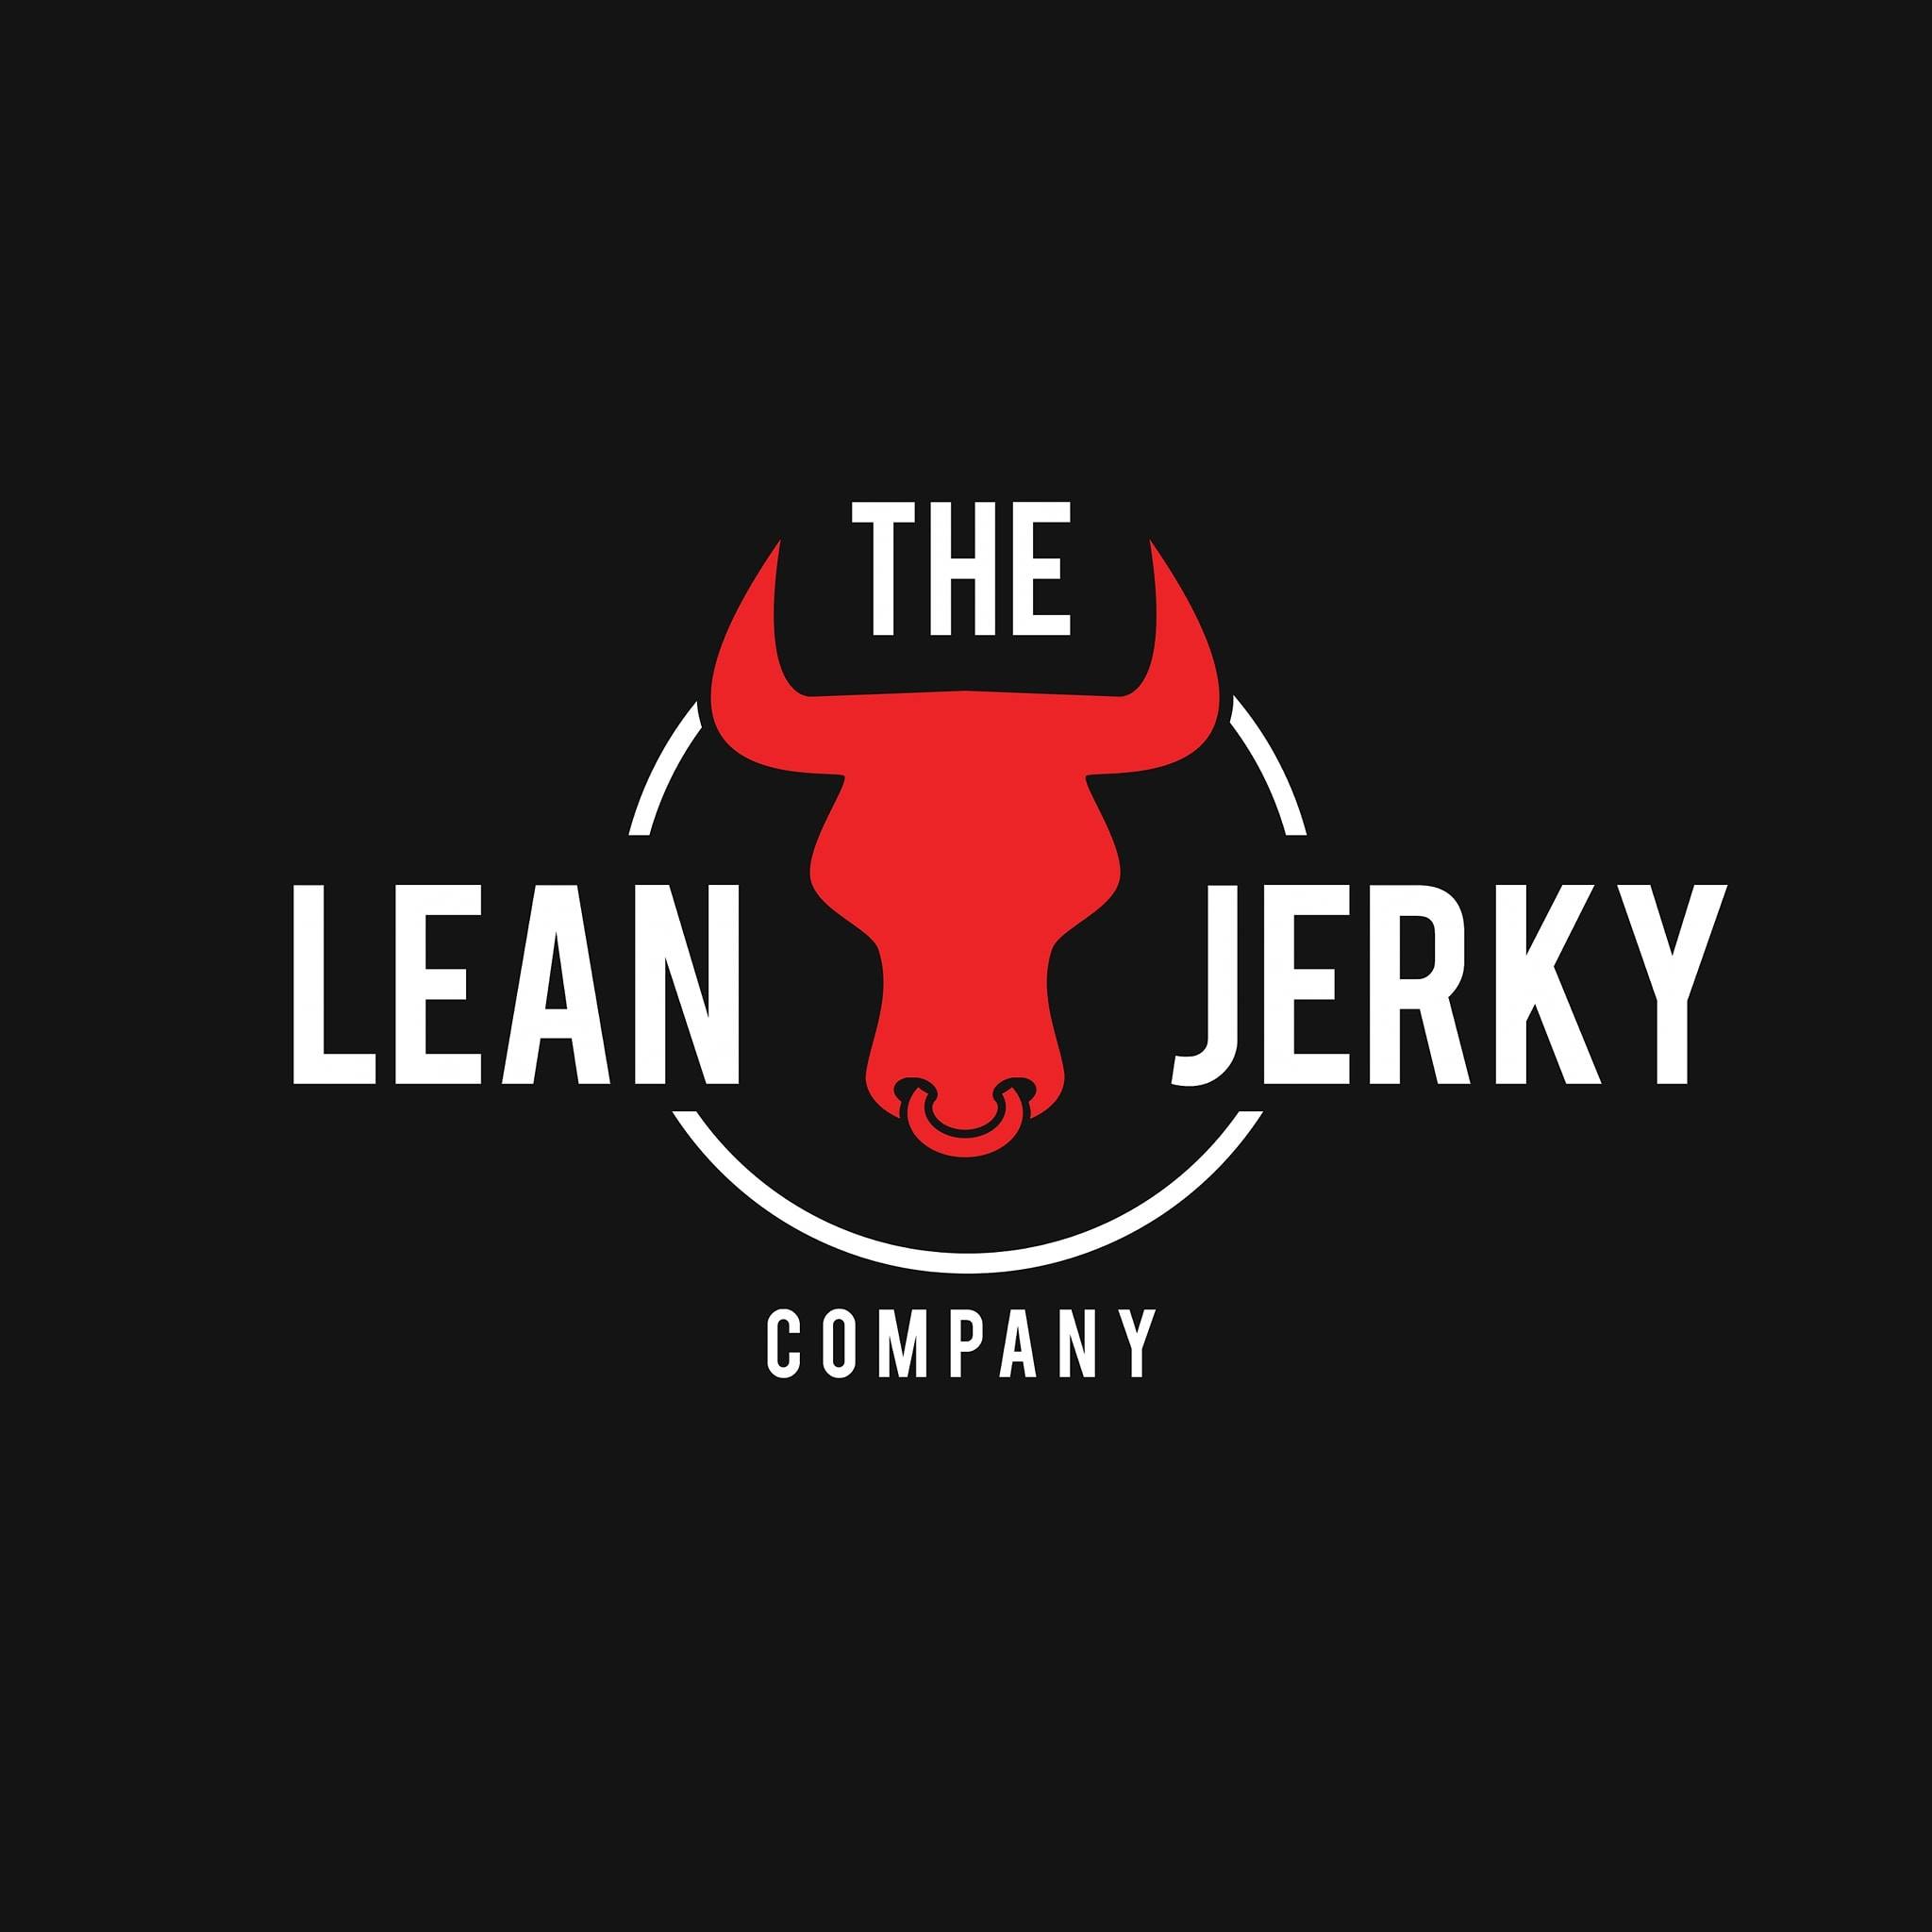 ذا لينا جيركي كومباني The Lean Jerky Company 